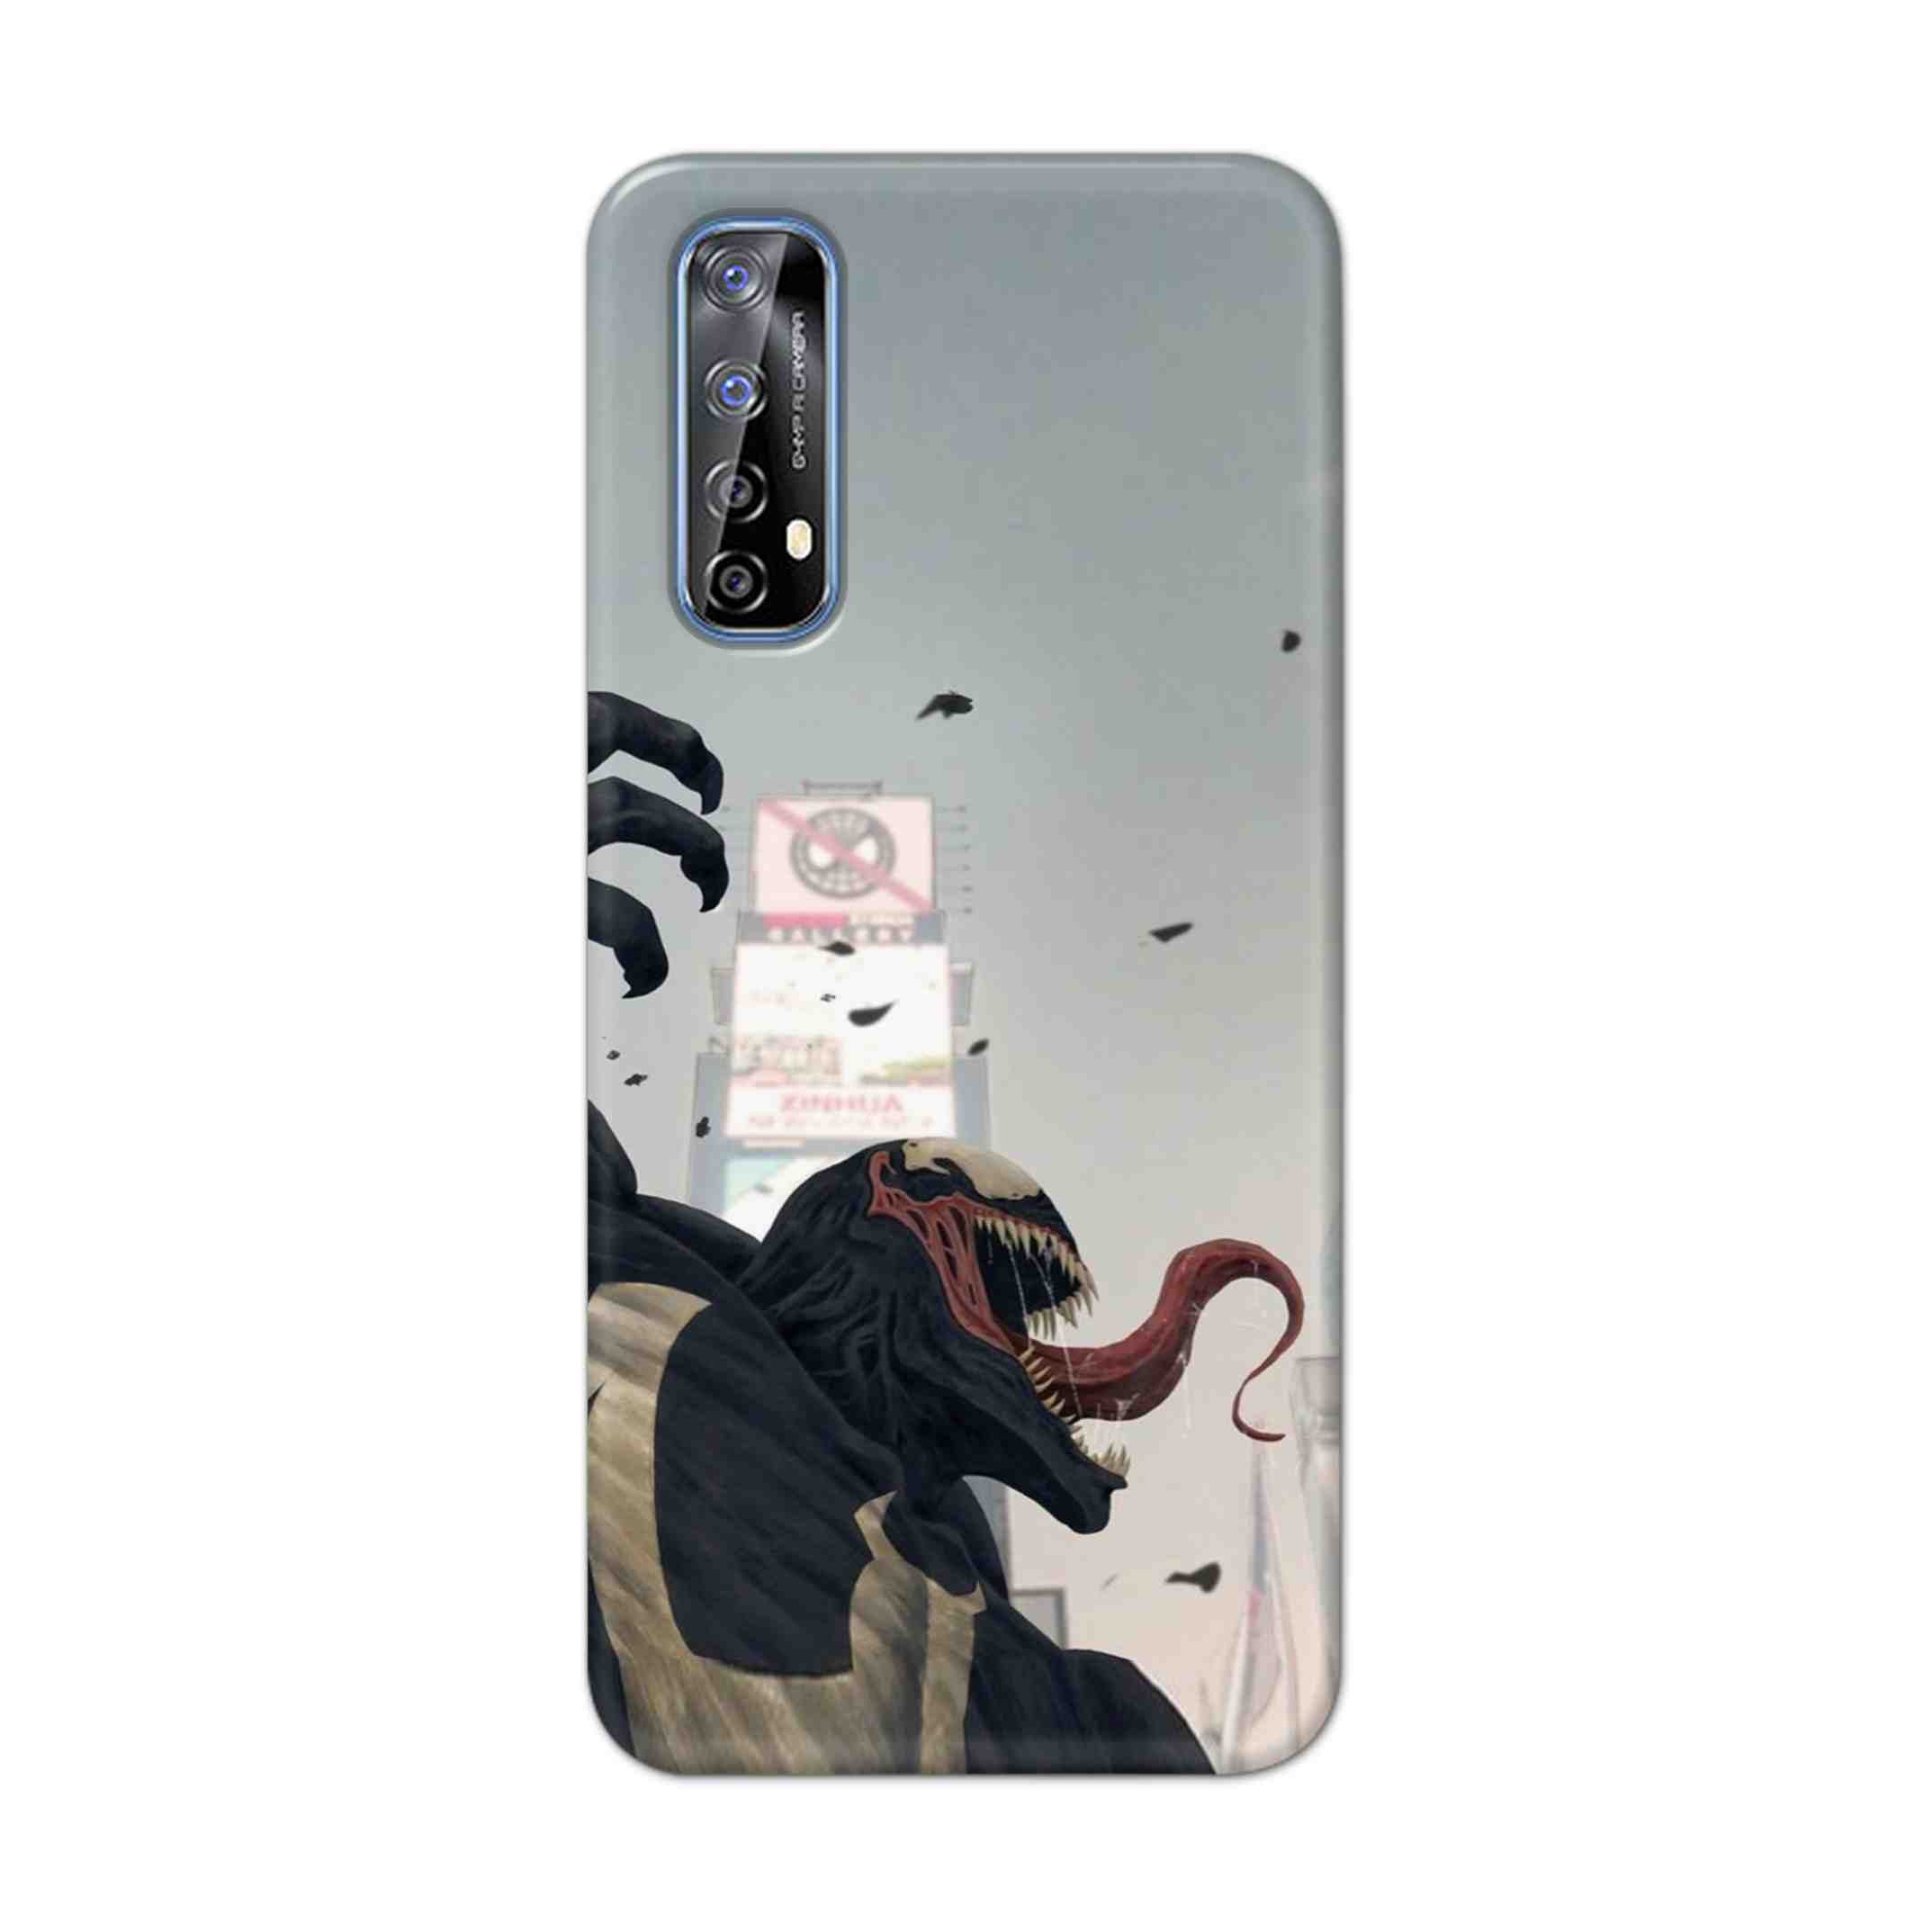 Buy Venom Crunch Hard Back Mobile Phone Case Cover For Realme 7 Online